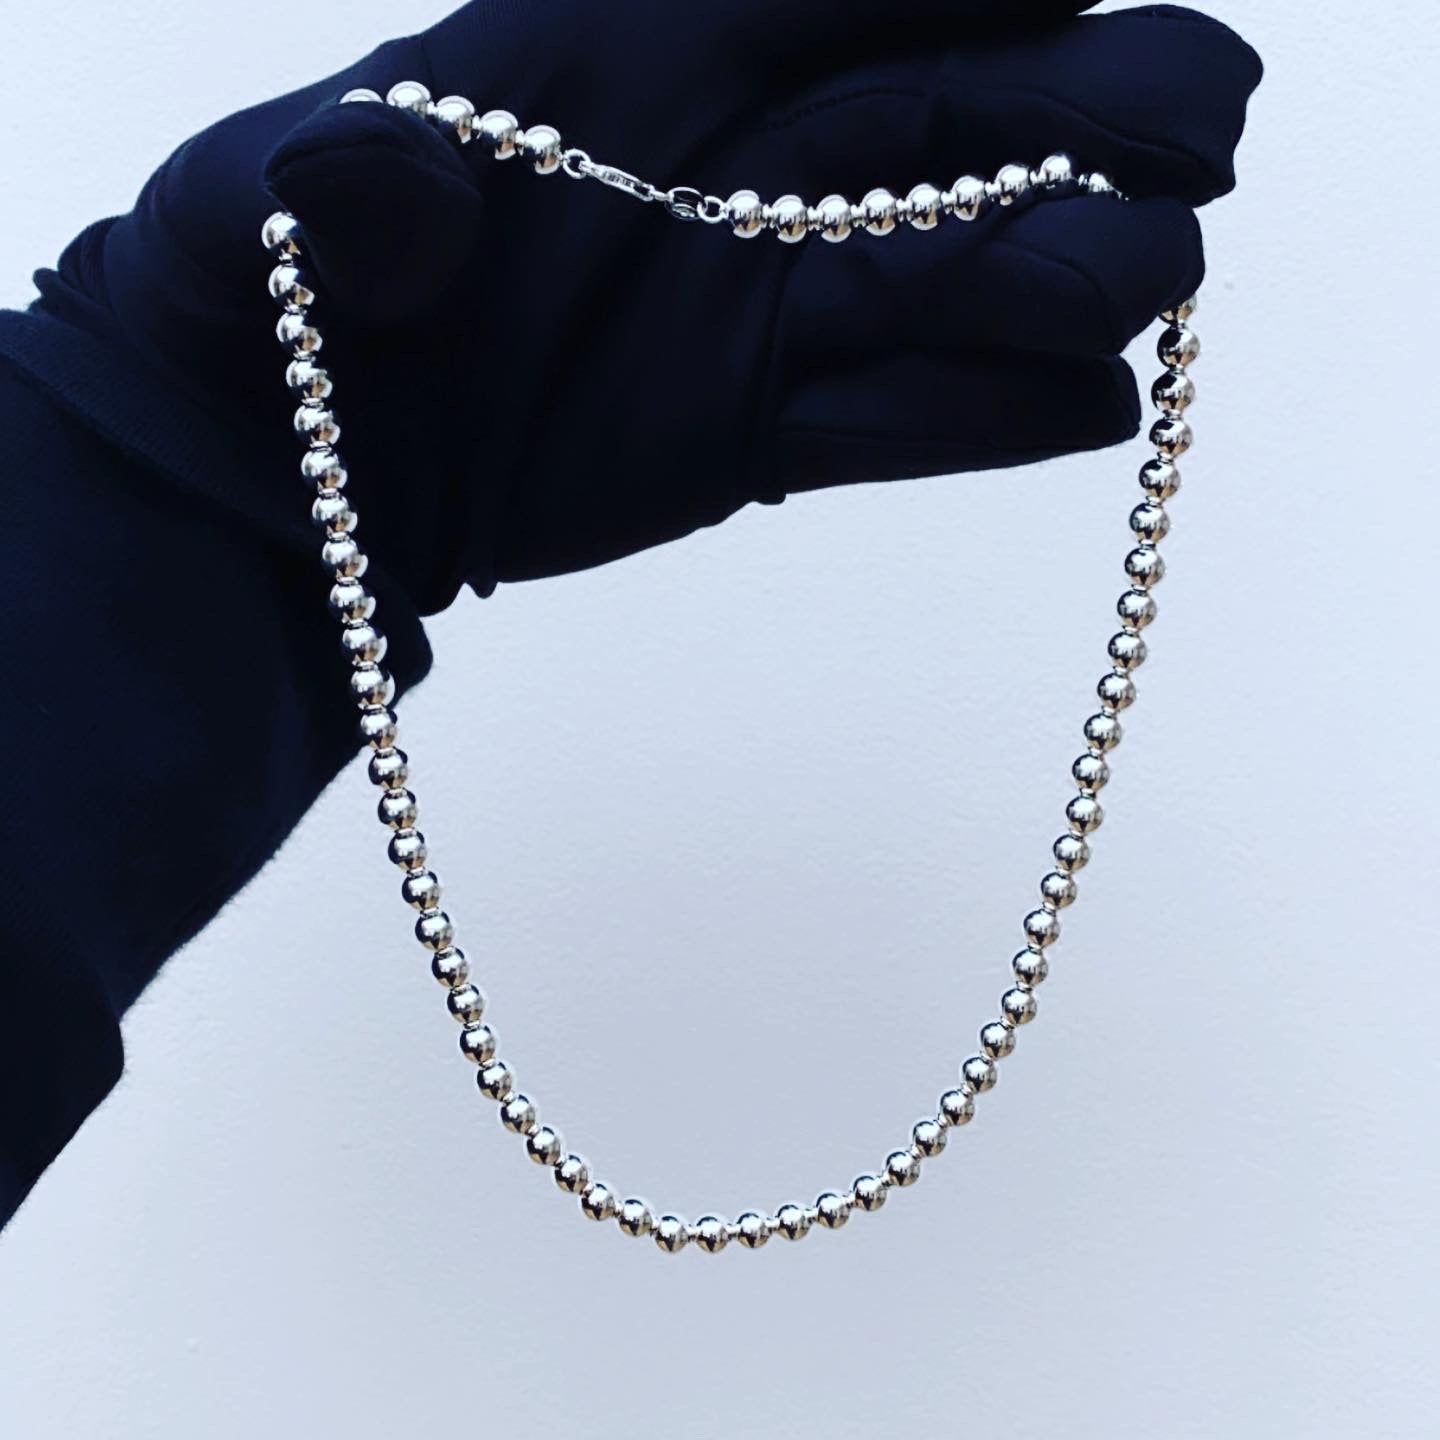 Silver ball chain 17” collar bone length